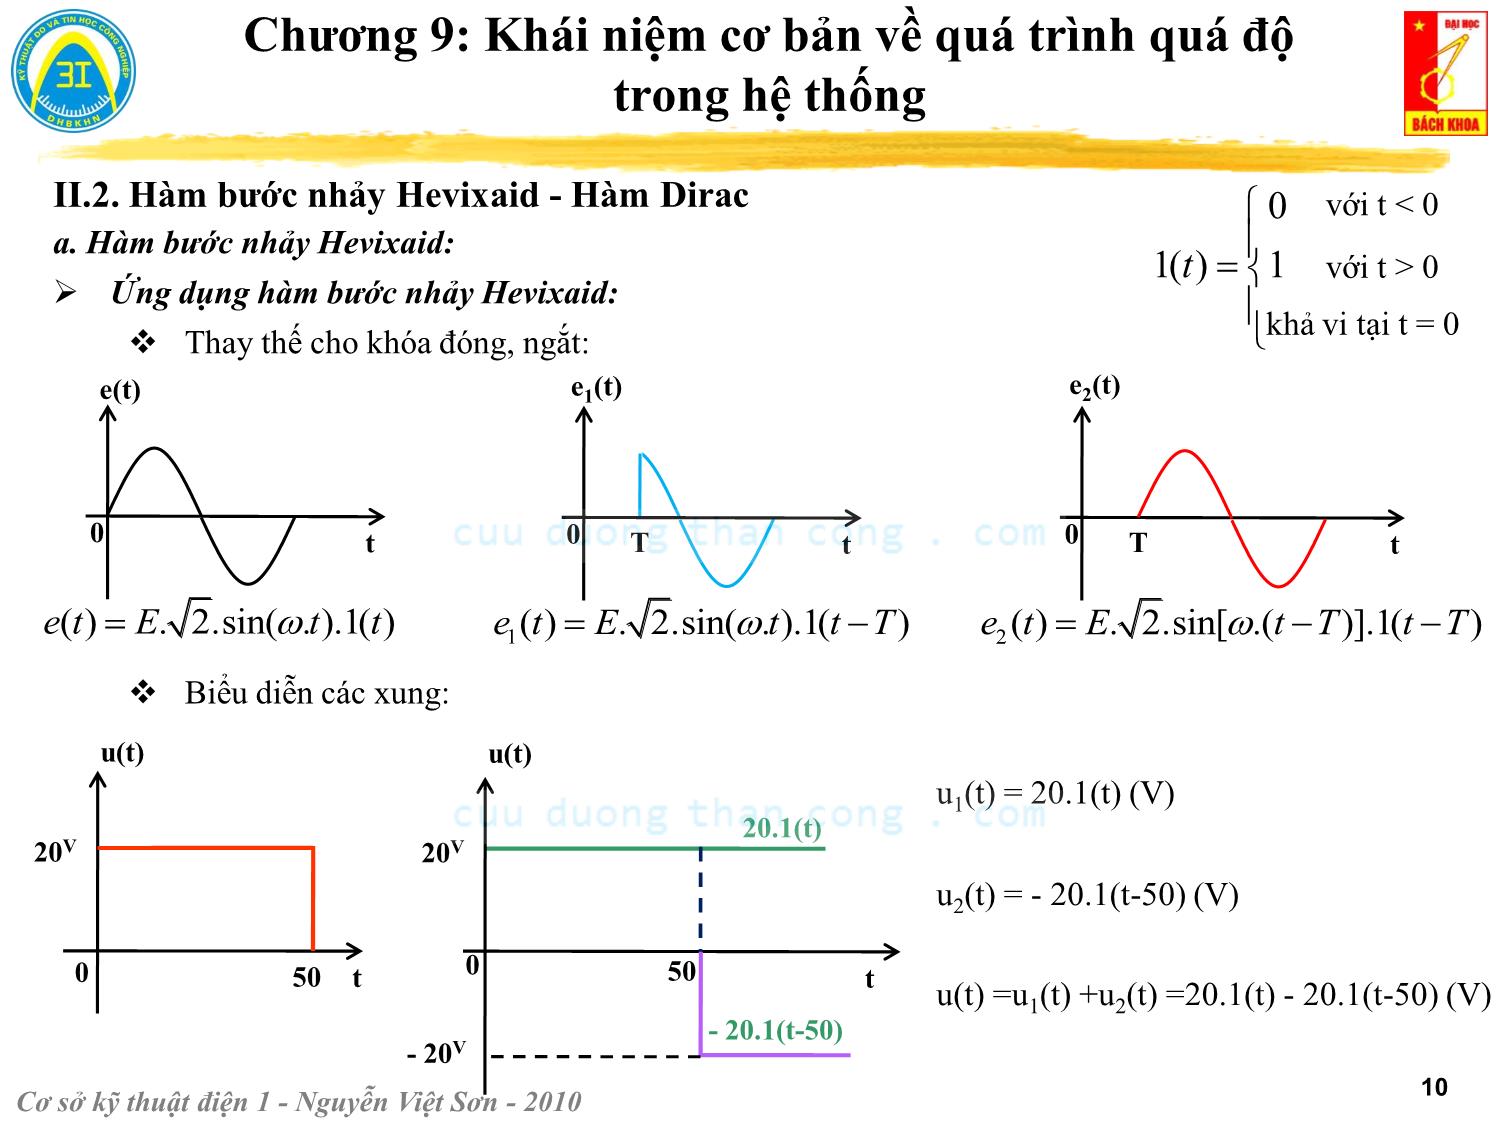 Bài giảng Kỹ thuật điện 1 - Chương 9: Khái niệm cơ bản về quá trình quá độ trong hệ thống - Nguyễn Việt Sơn trang 10